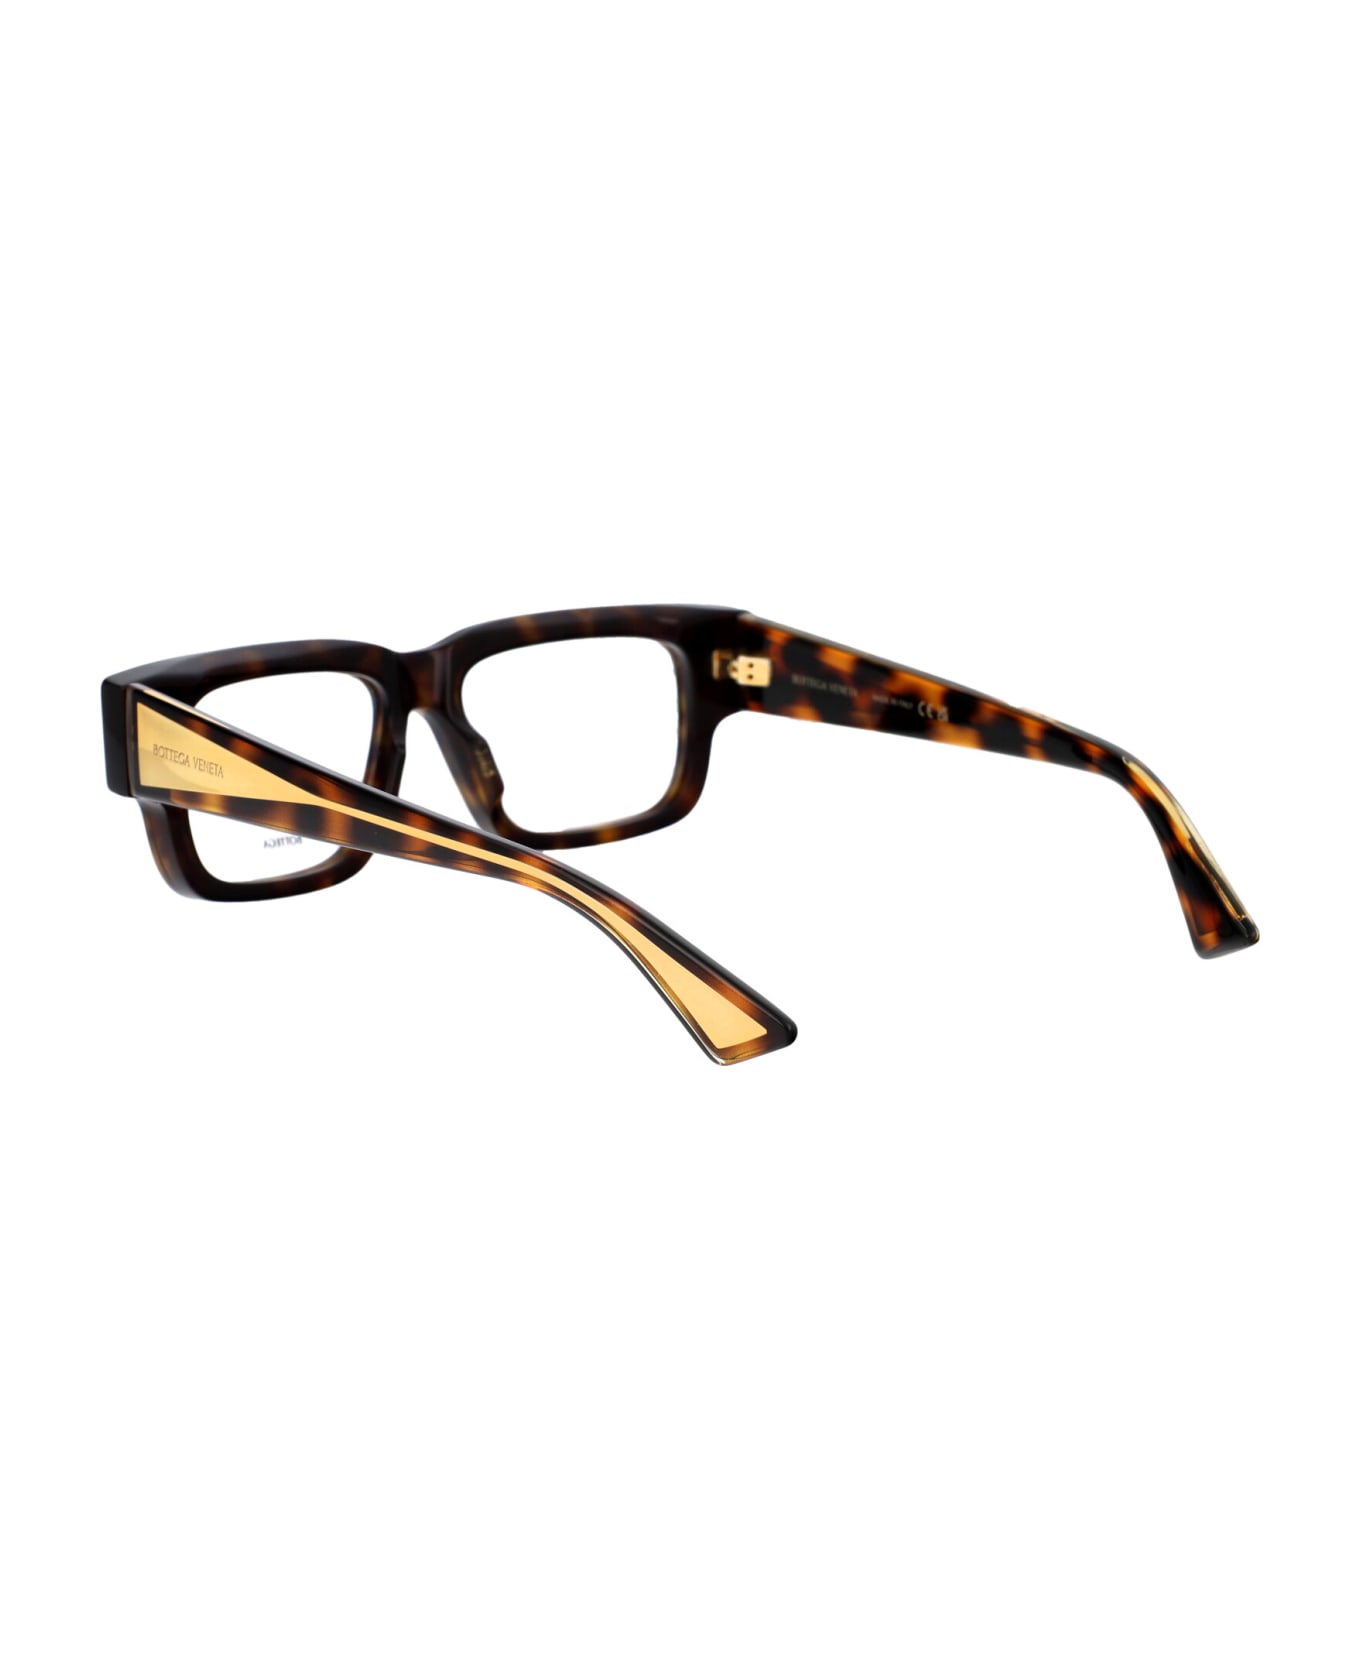 Bottega Veneta Eyewear Bv1280o Glasses - 002 HAVANA CRYSTAL TRANSPARENT